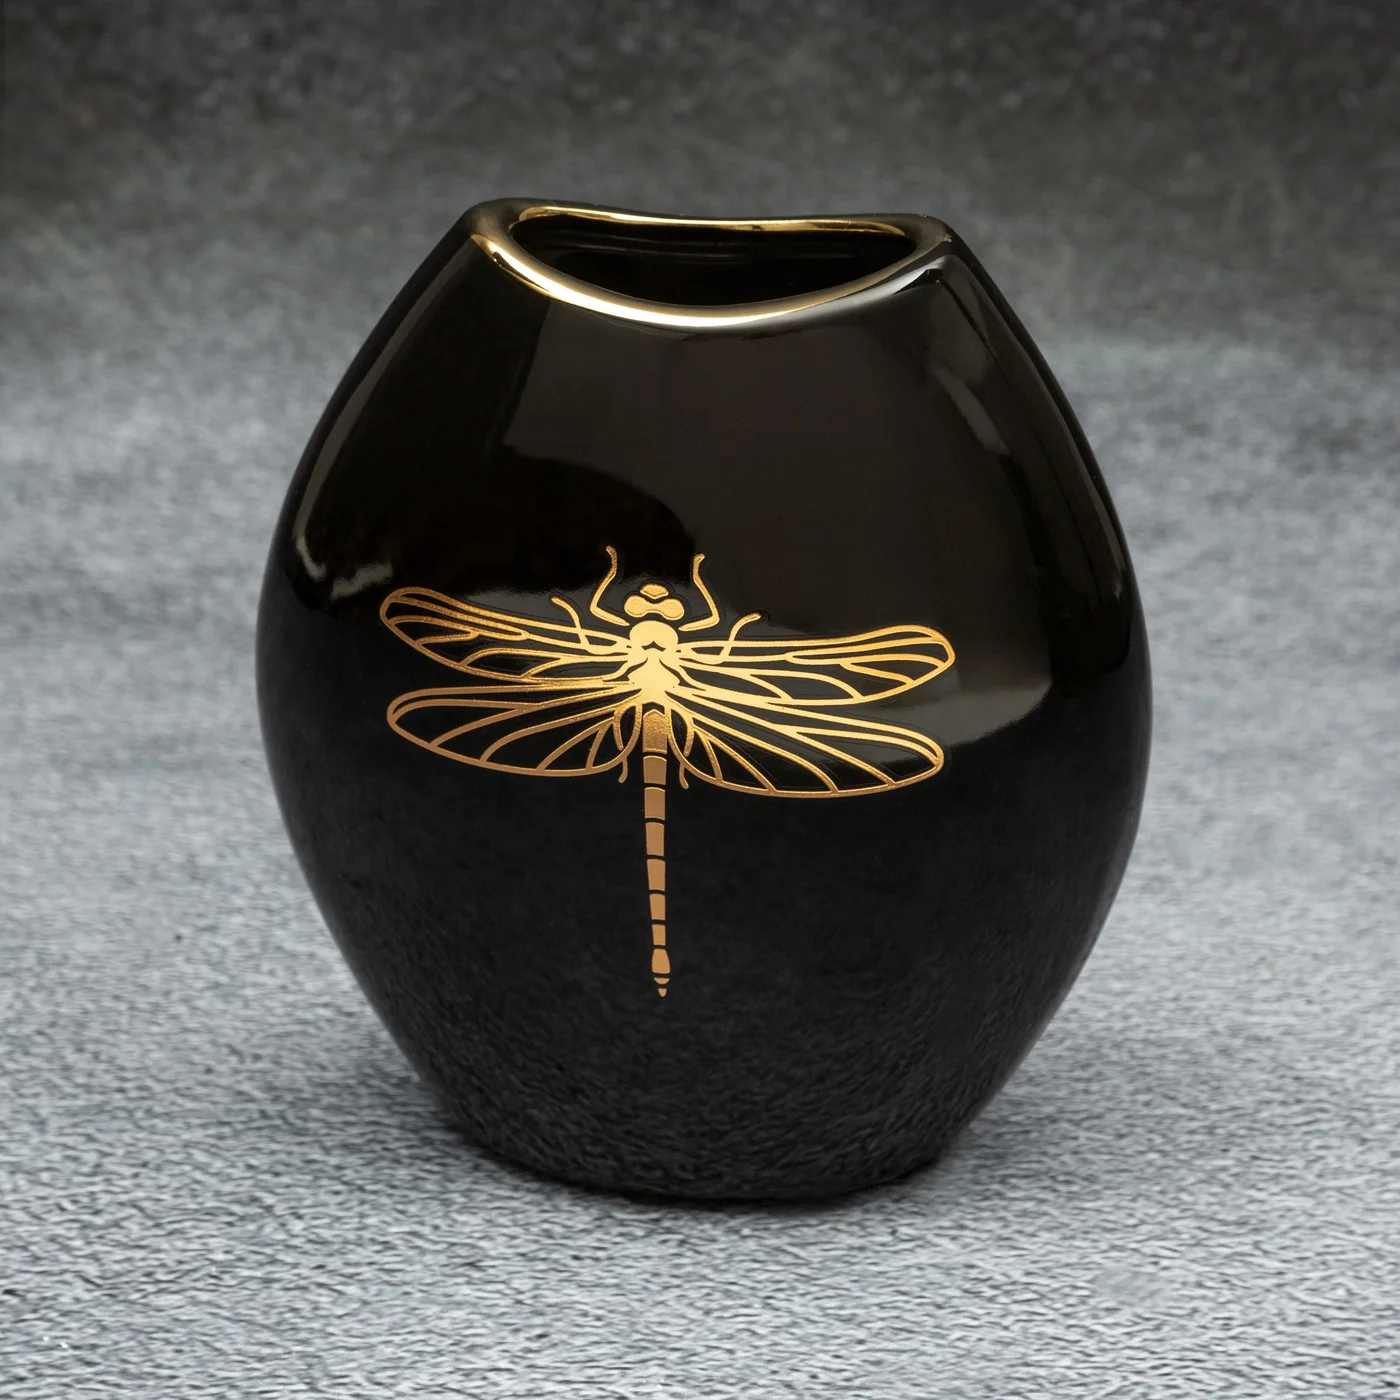 Wazon ceramiczny z nadrukiem złotej ważki